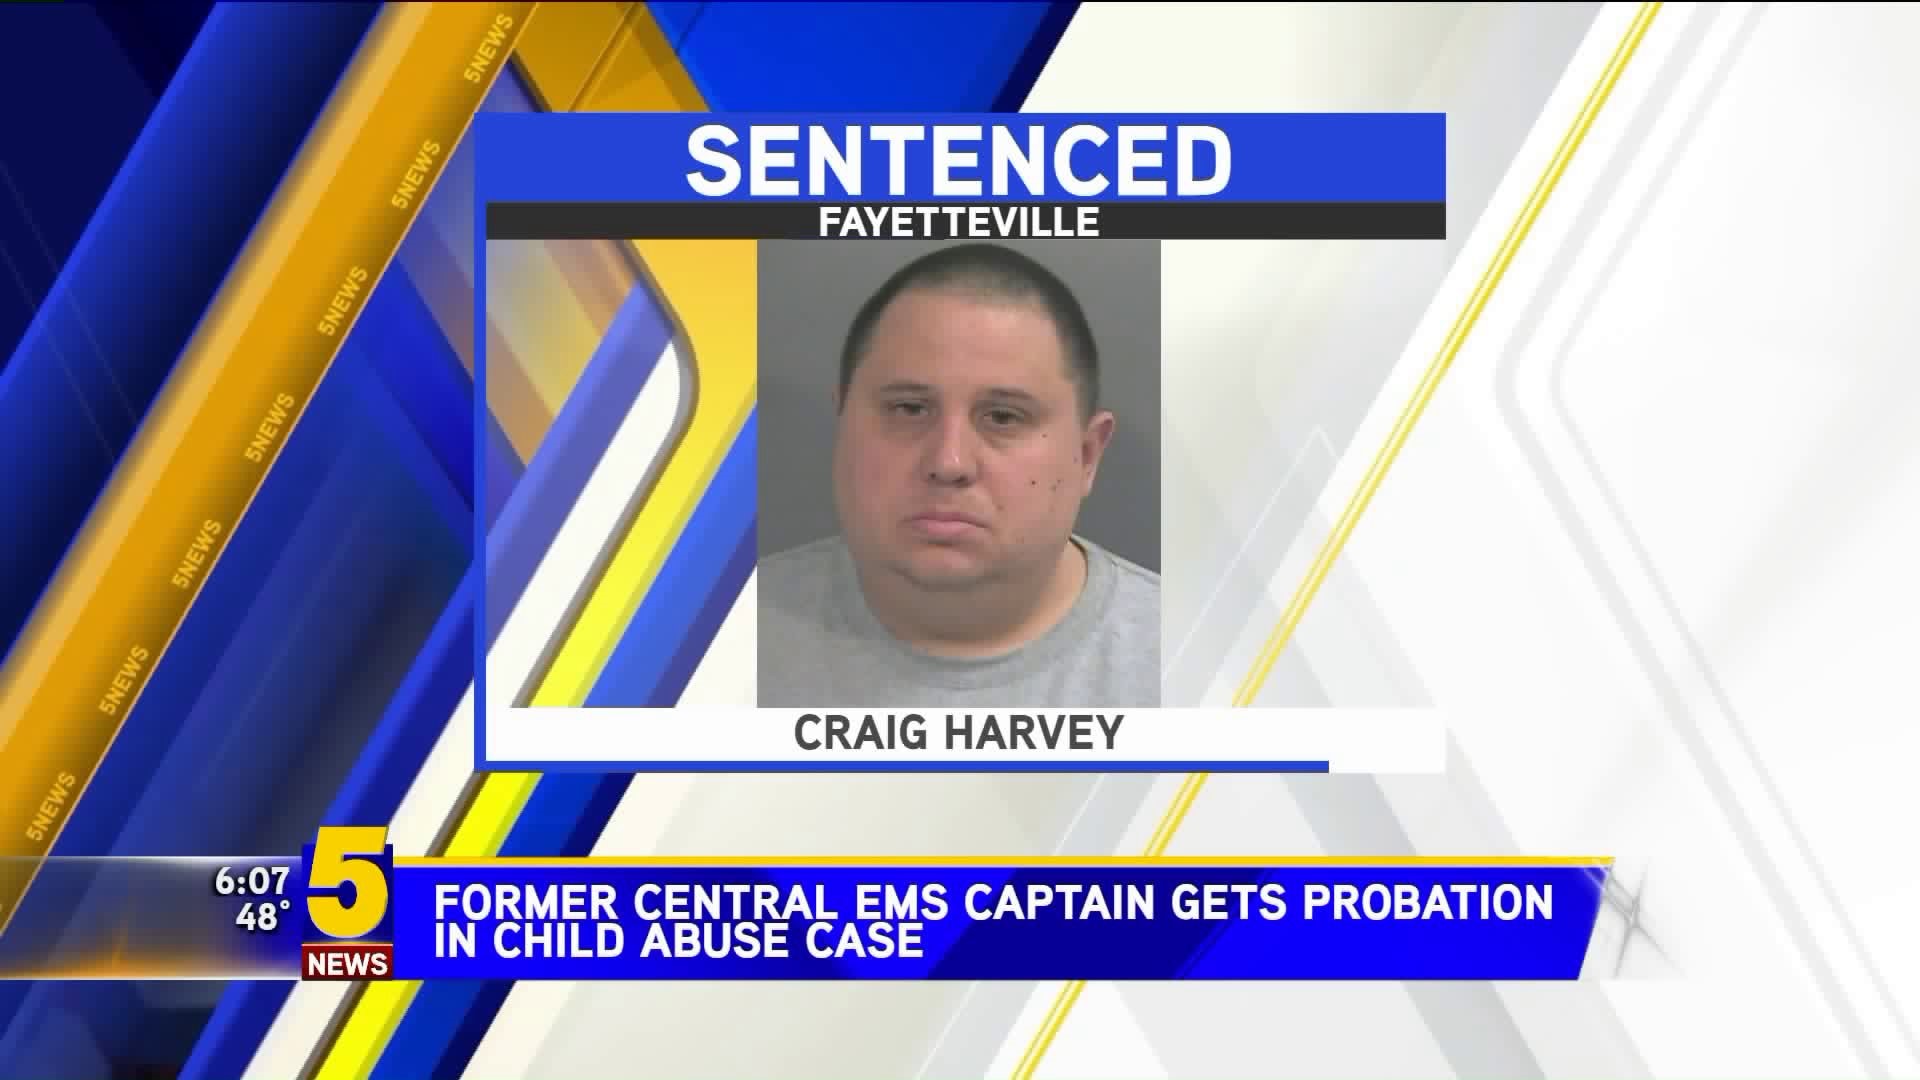 Former Central EMS Captain Gets Probation In Child Abuse Case